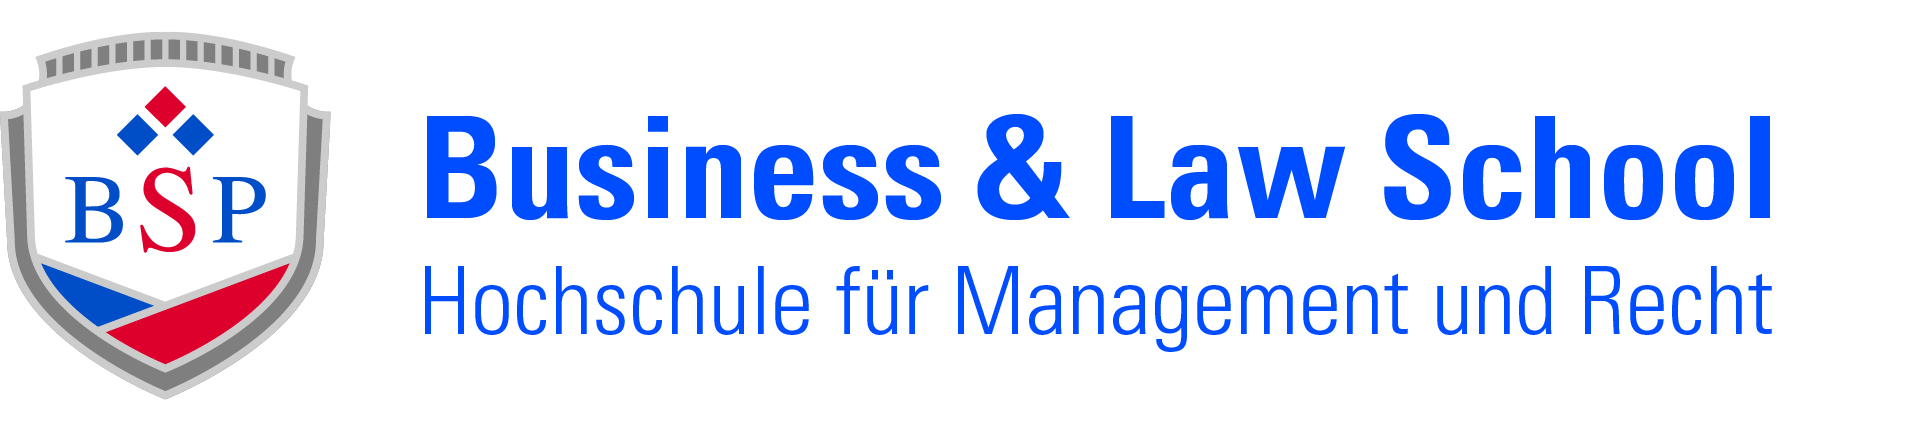 Logo: BSP Business and Law School - Hochschule für Management und Recht